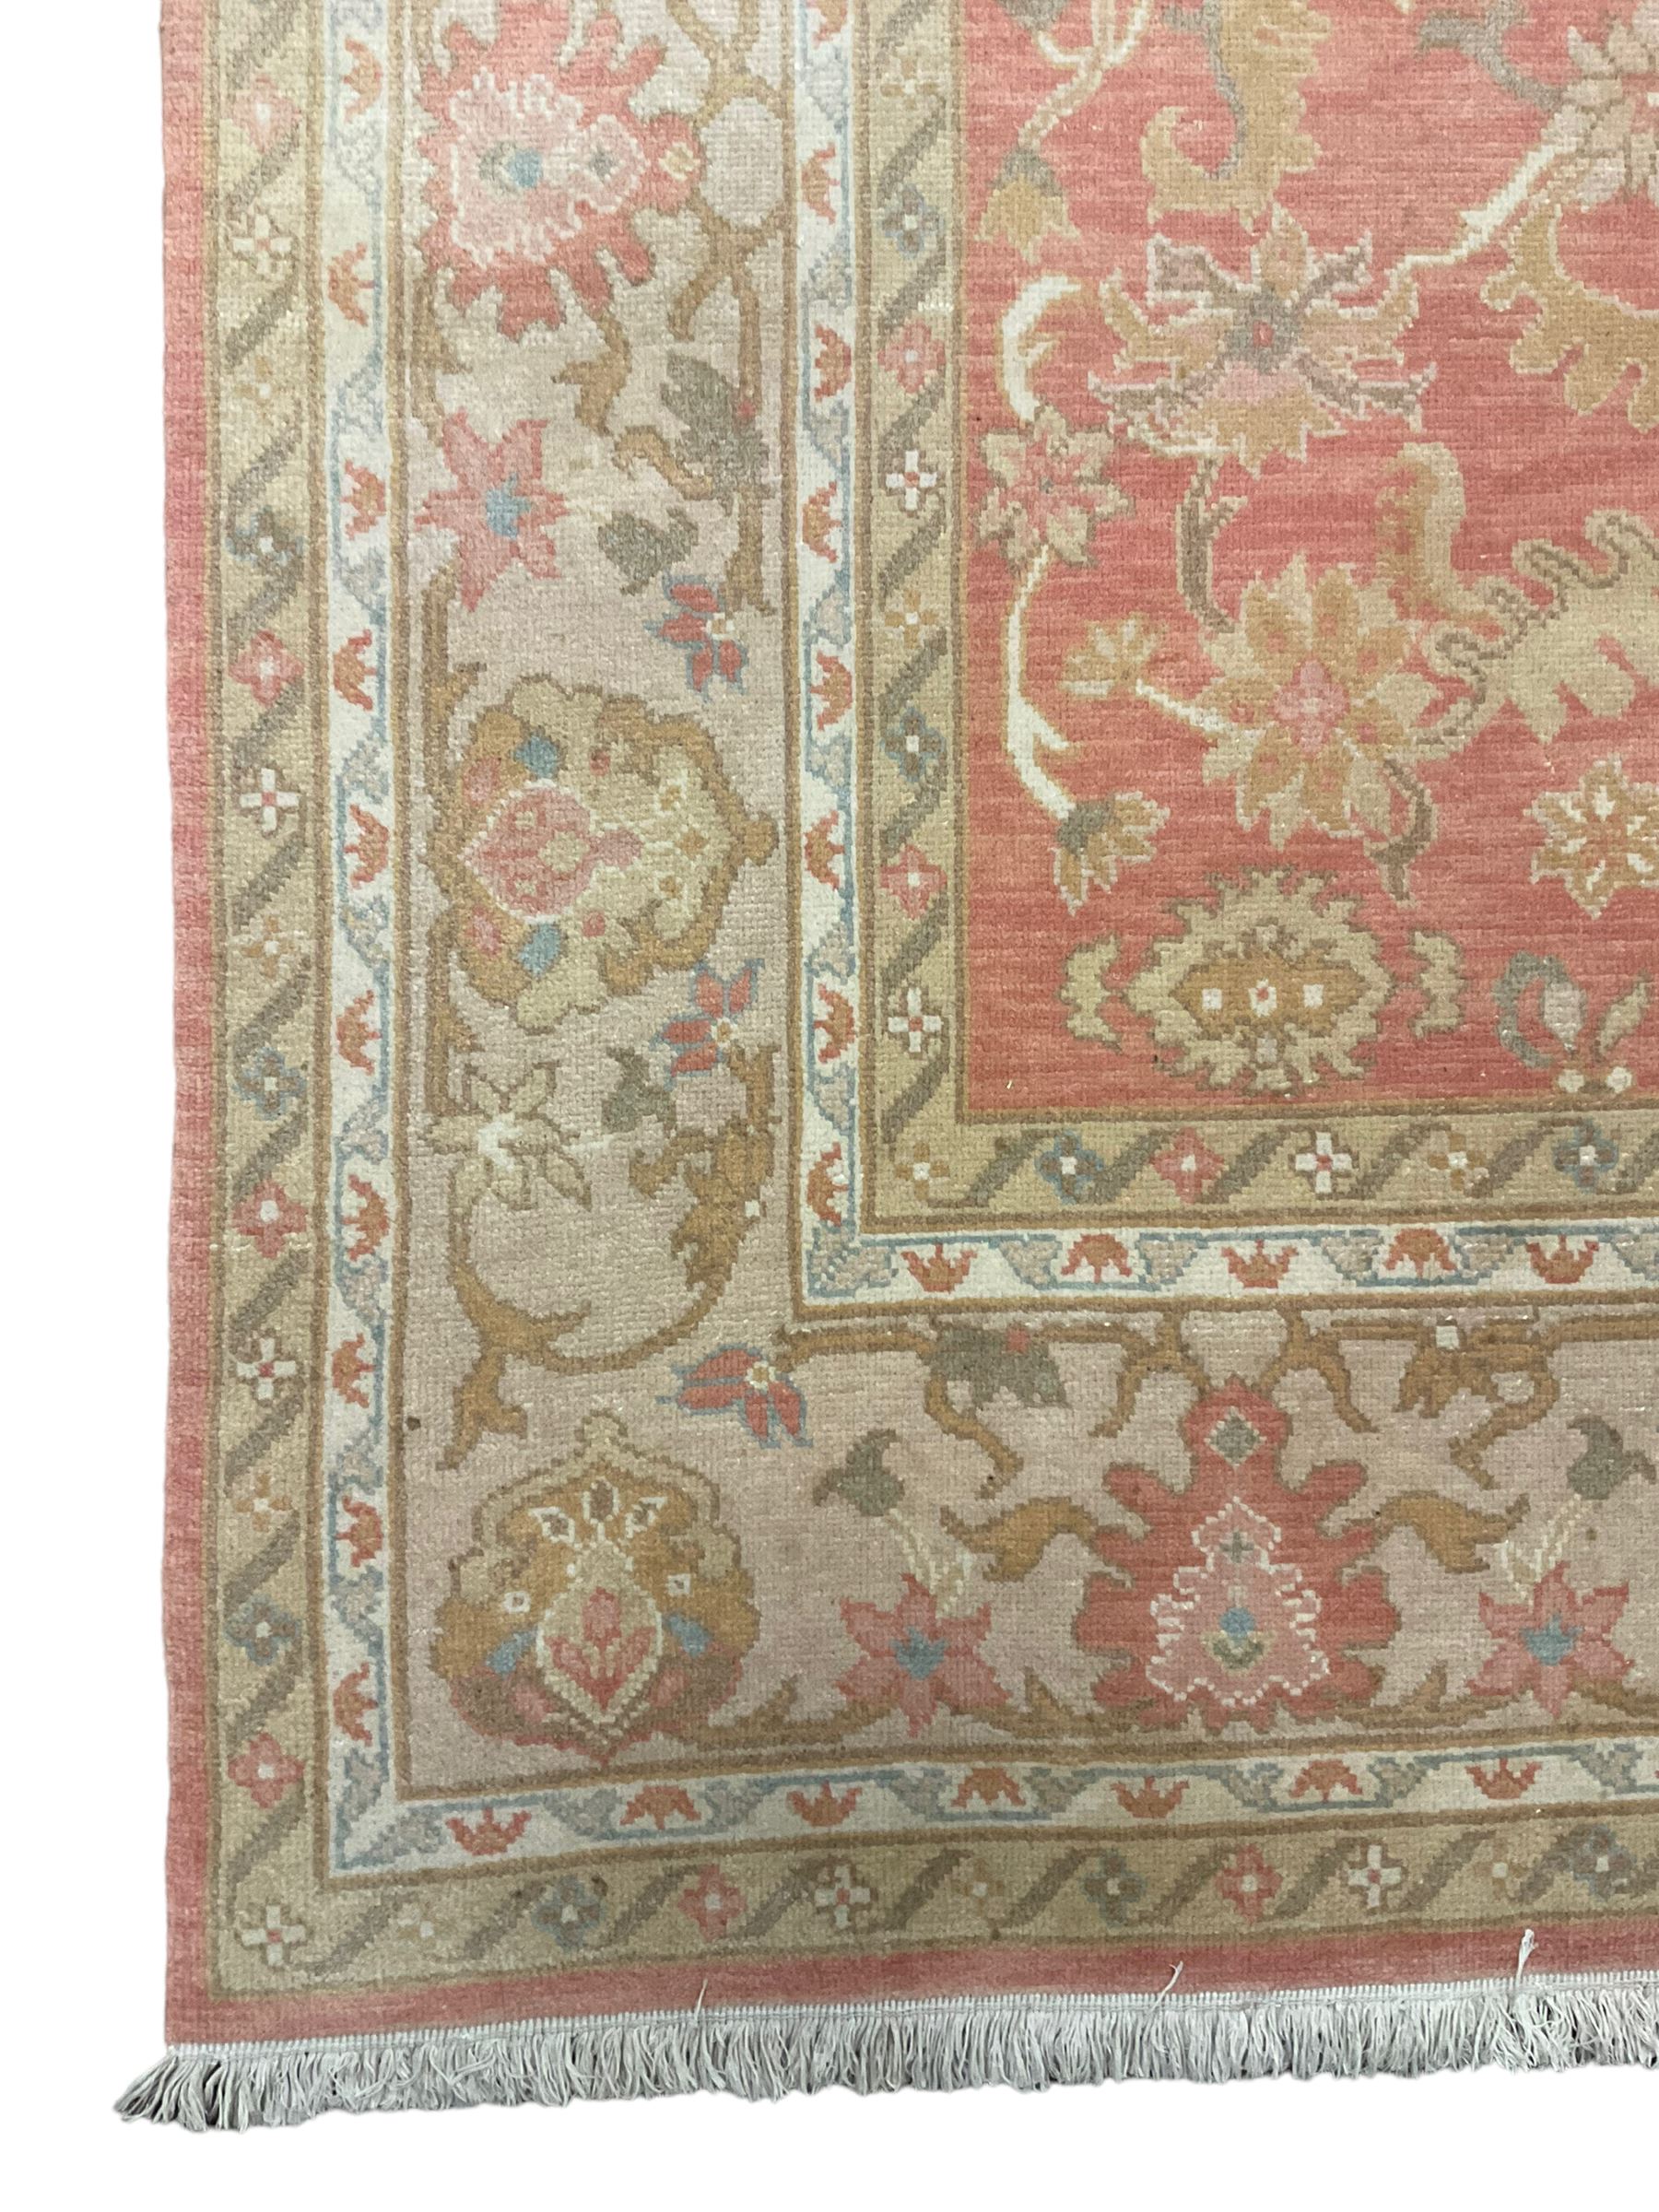 Persian Zeigler design rug - Image 2 of 5